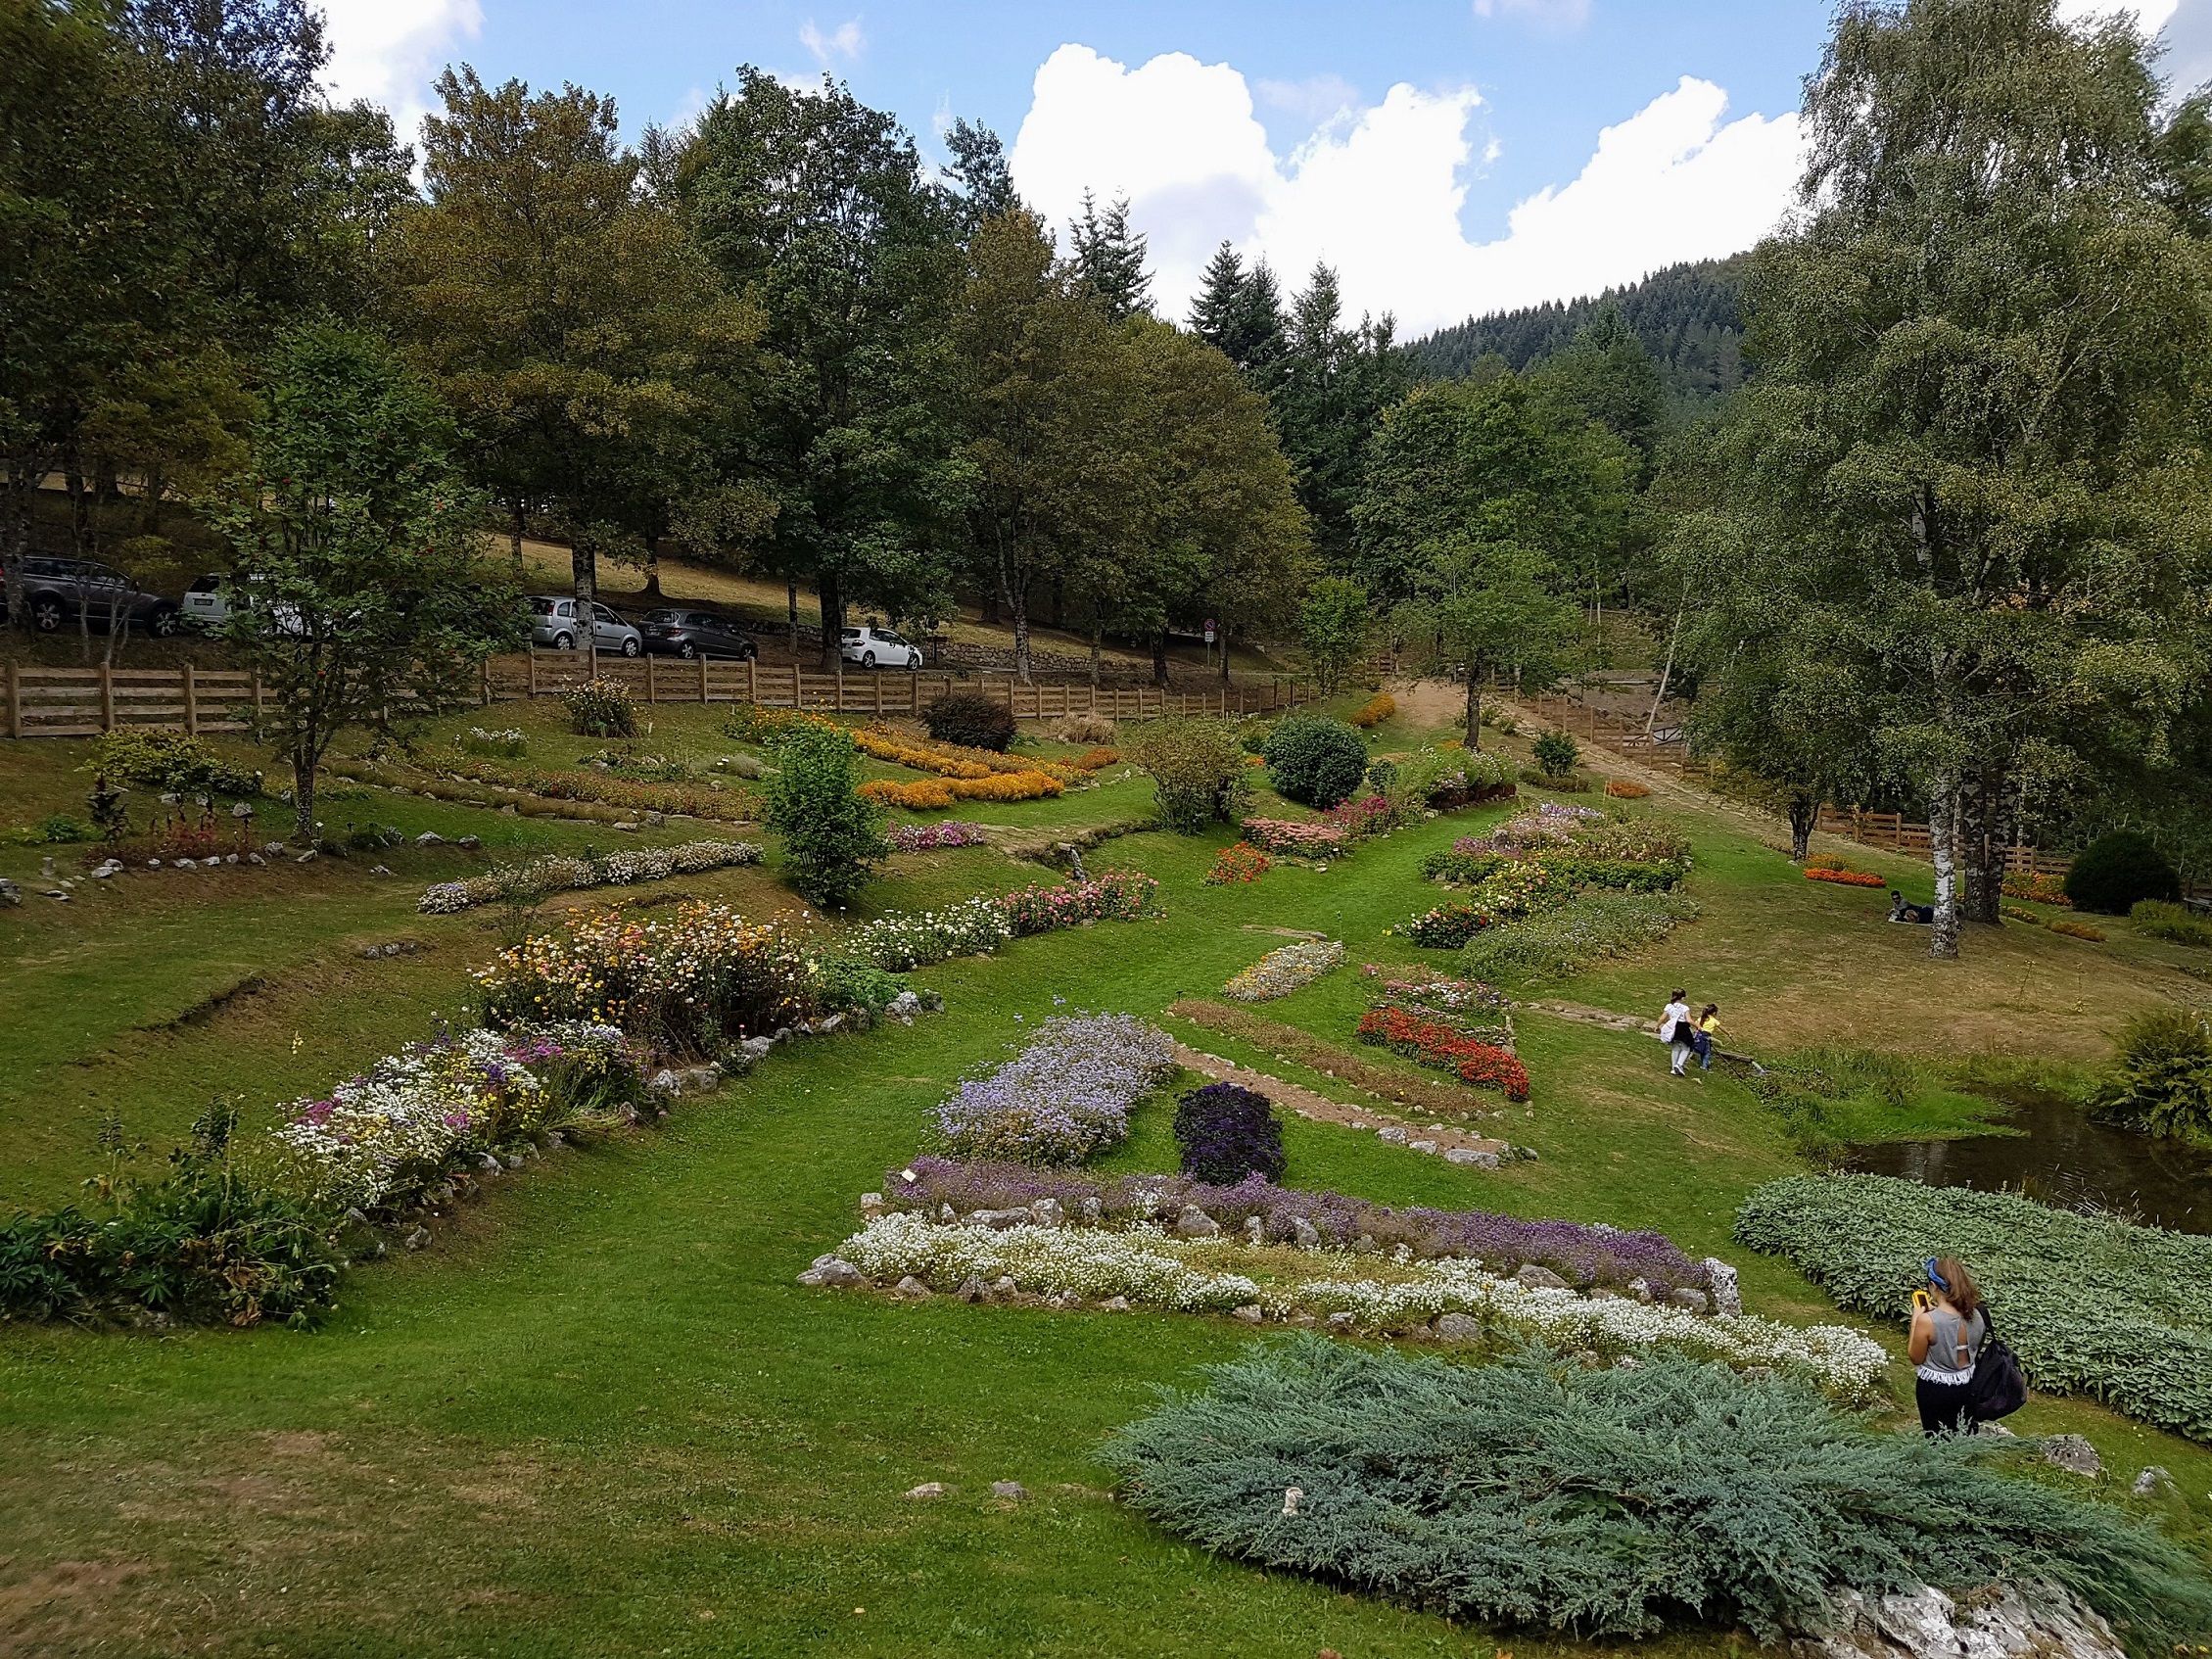 Photo of the Giardino Botanico Maria Ansaldi on the Parco dell'Orecchiella in Tuscany - Local guide @LuigiZ